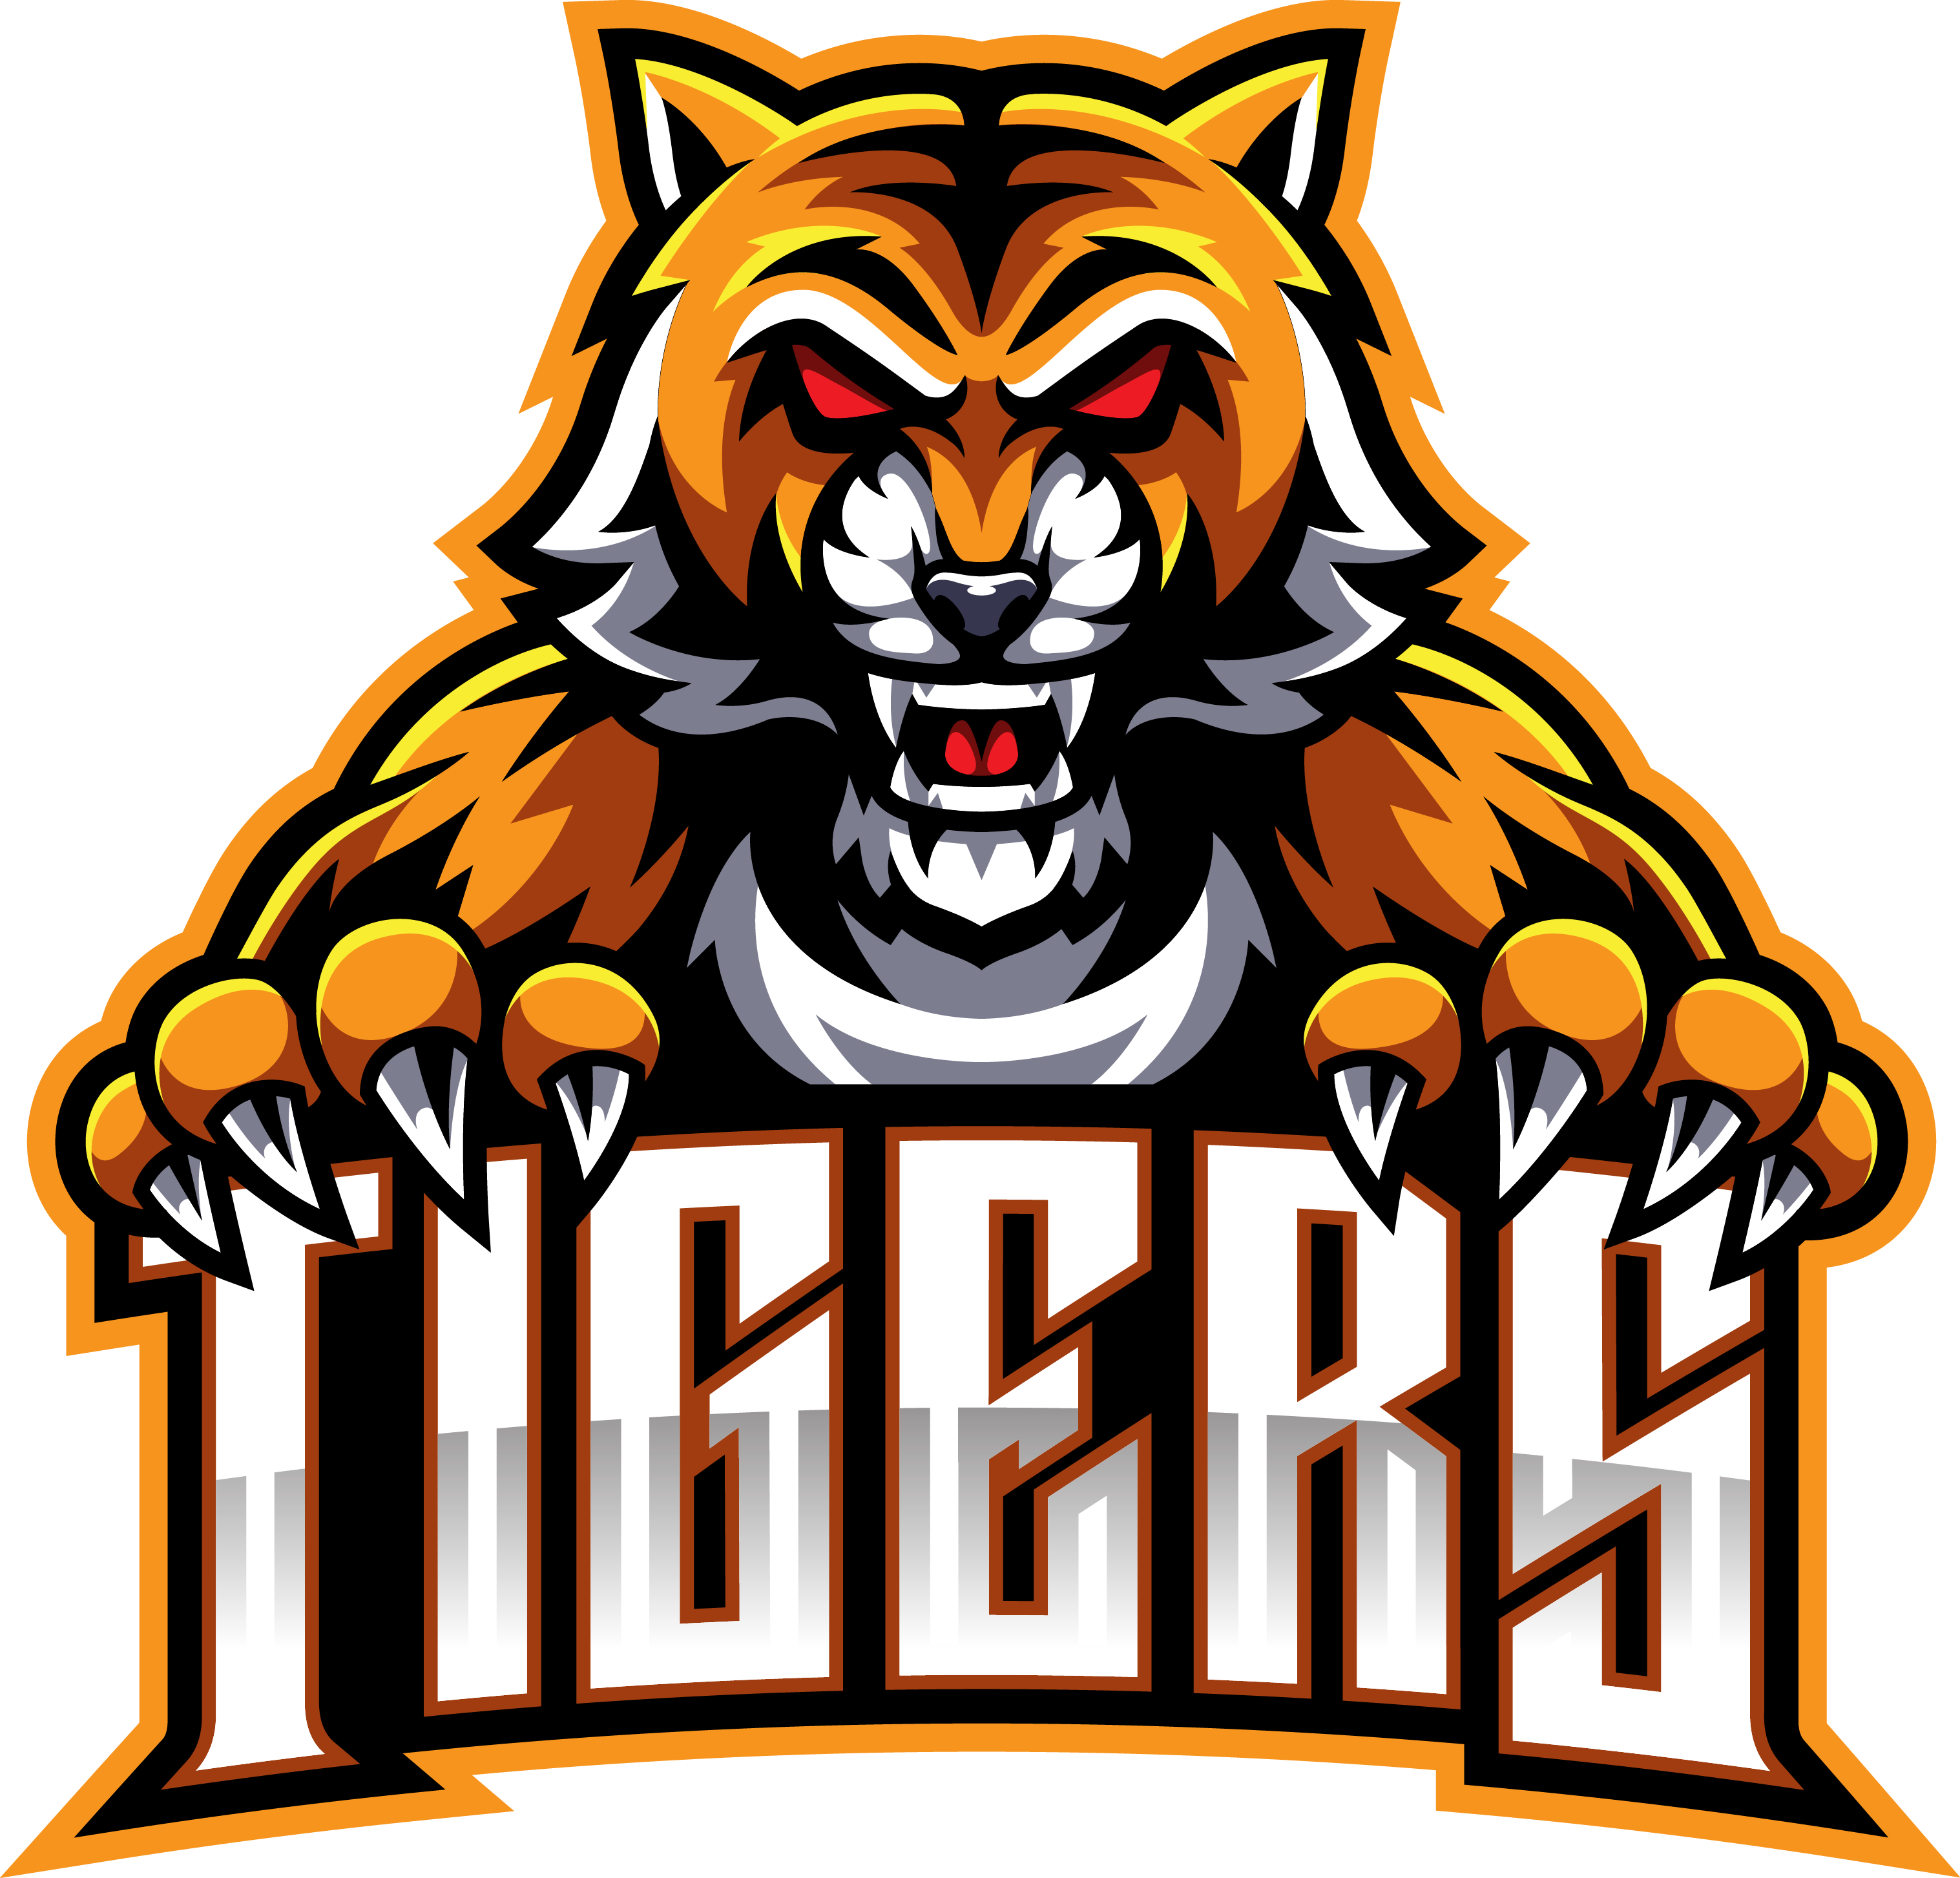 Tiger face mascot logo design By Visink | TheHungryJPEG.com